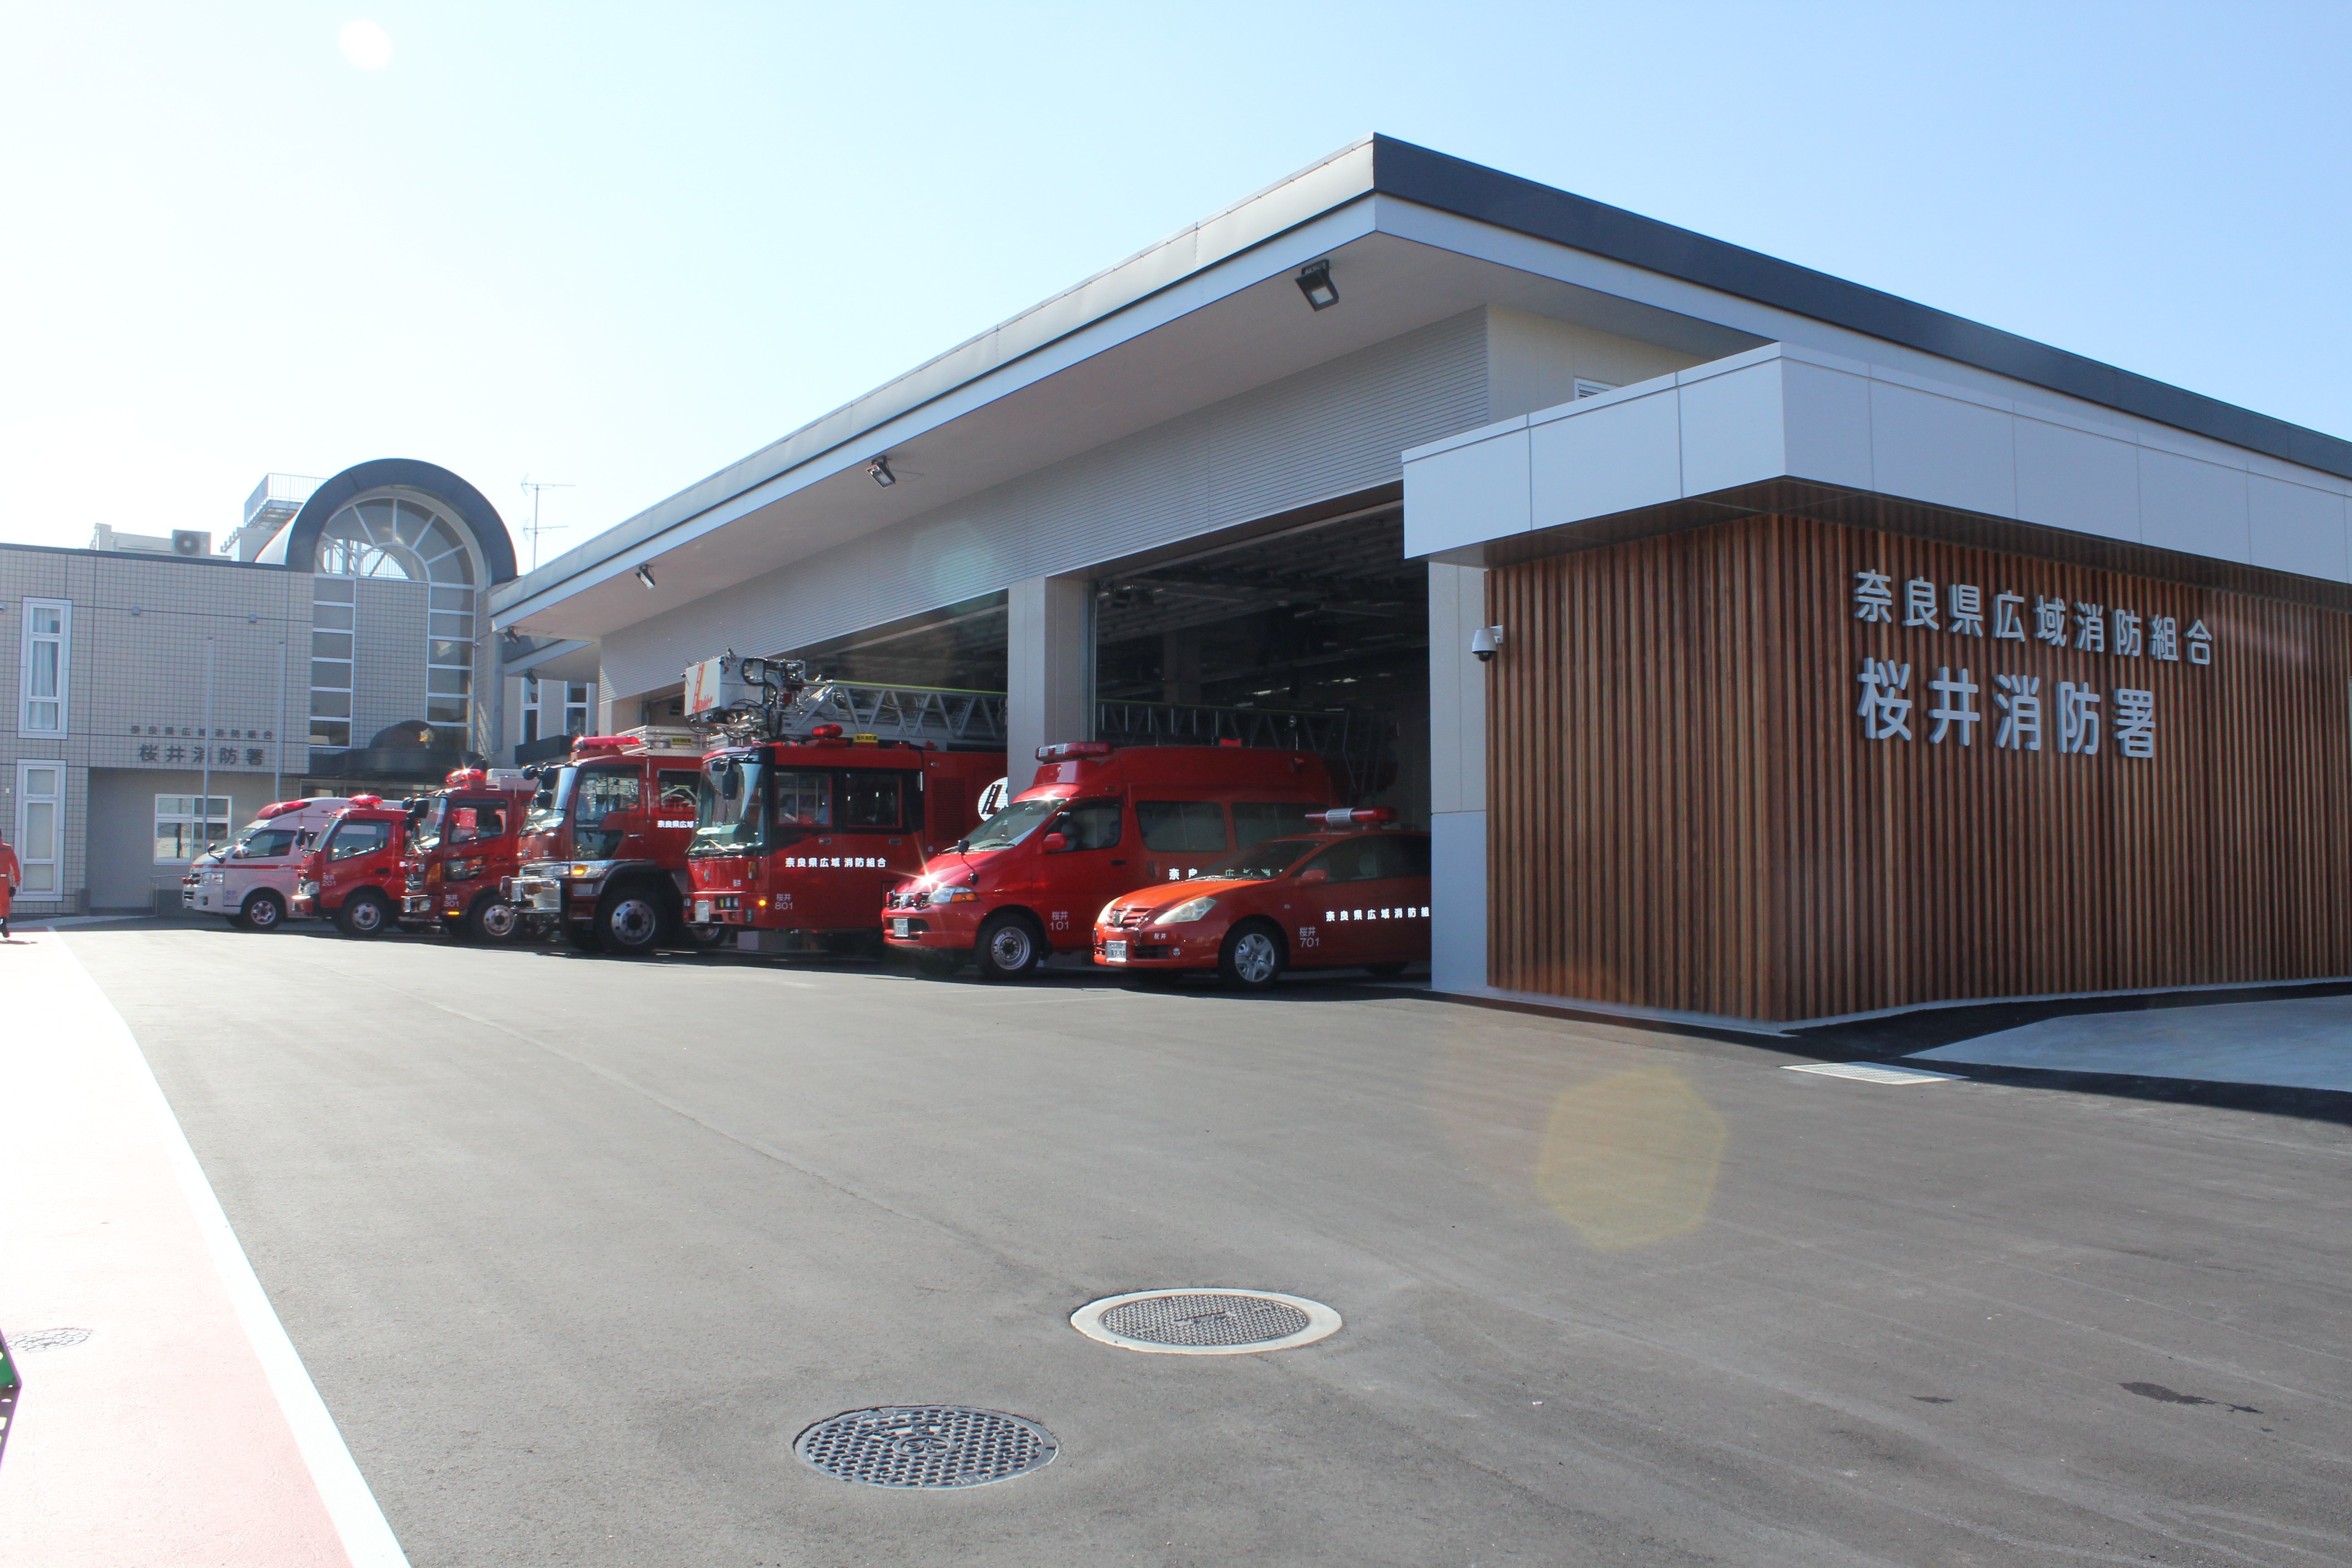 桜井消防署の写真